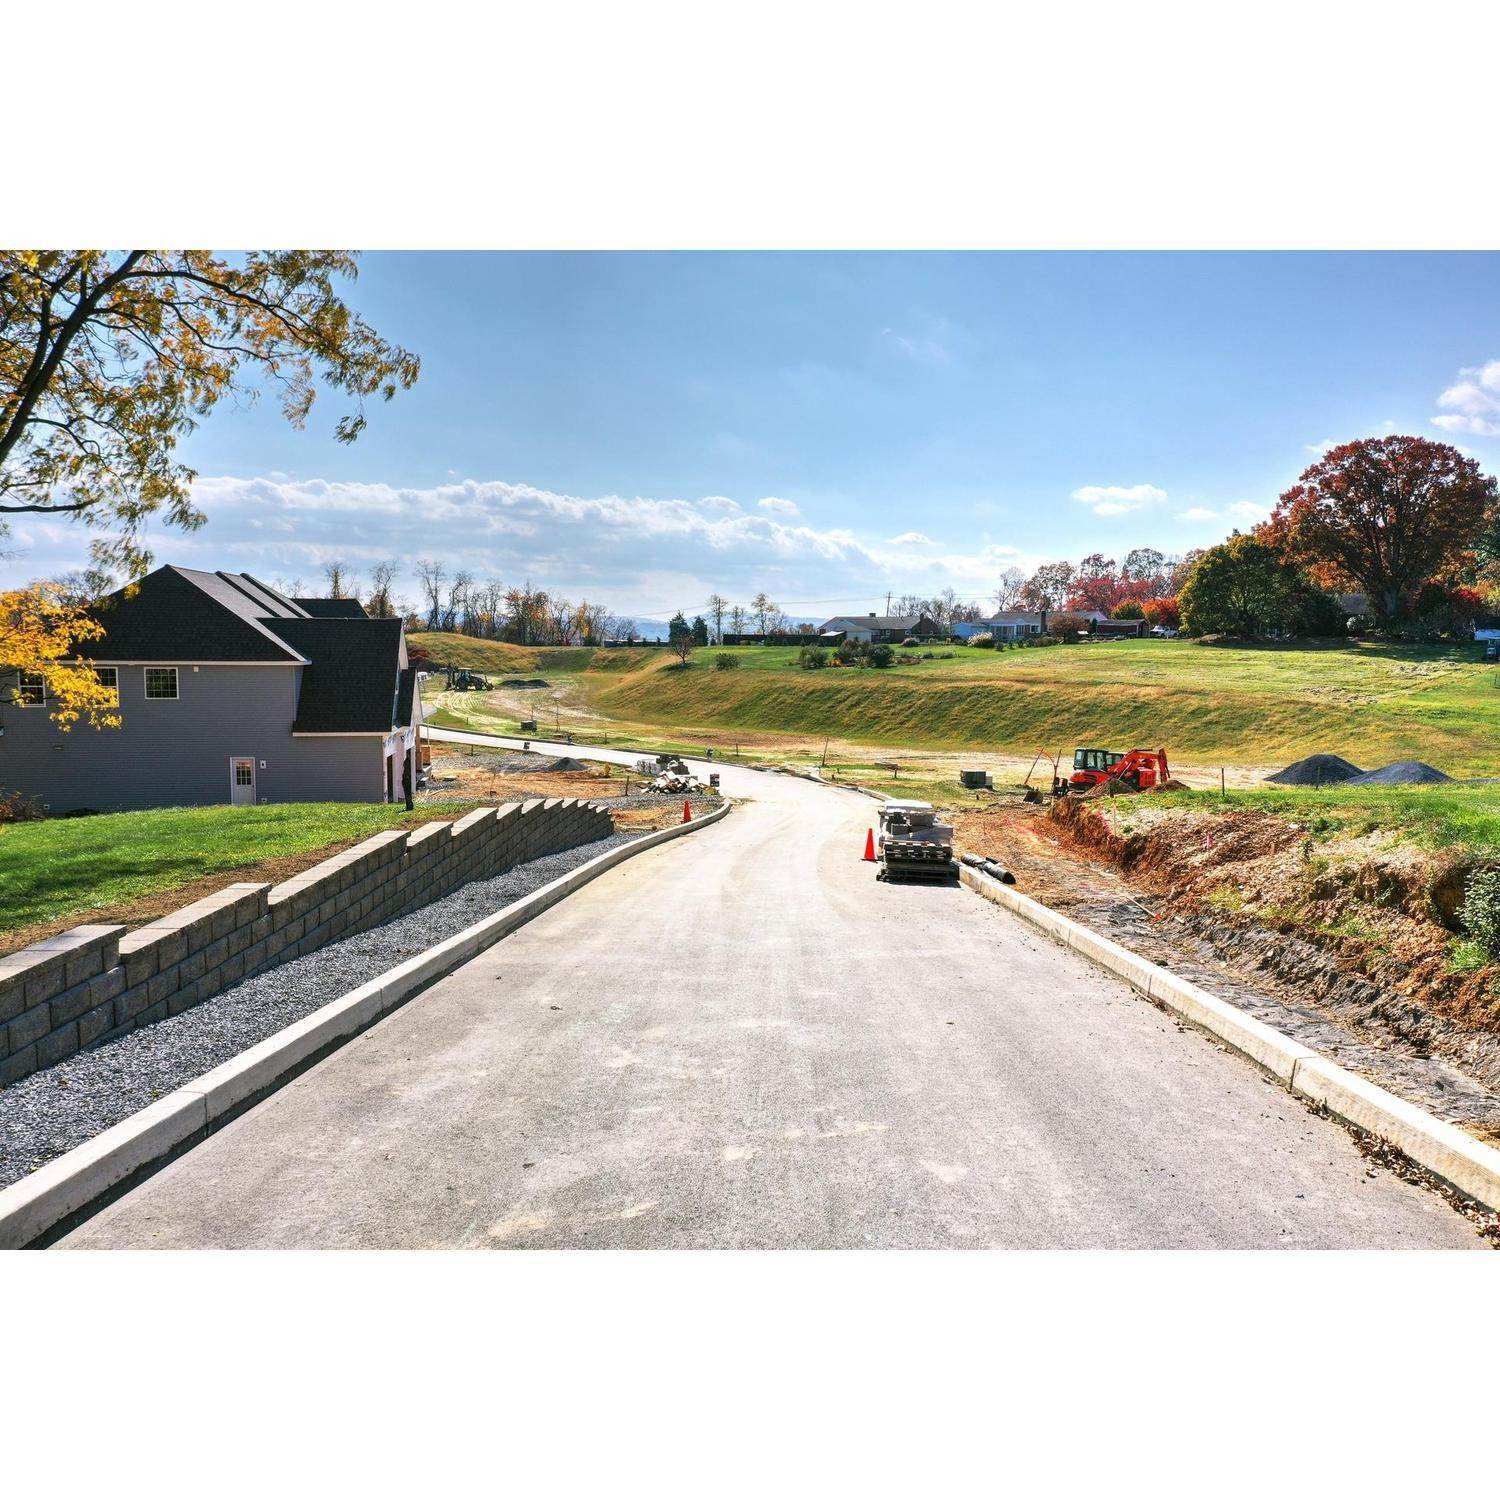 11. Lark Meadows xây dựng tại 1229 Rossmoyne Rd, Mechanicsburg, PA 17055